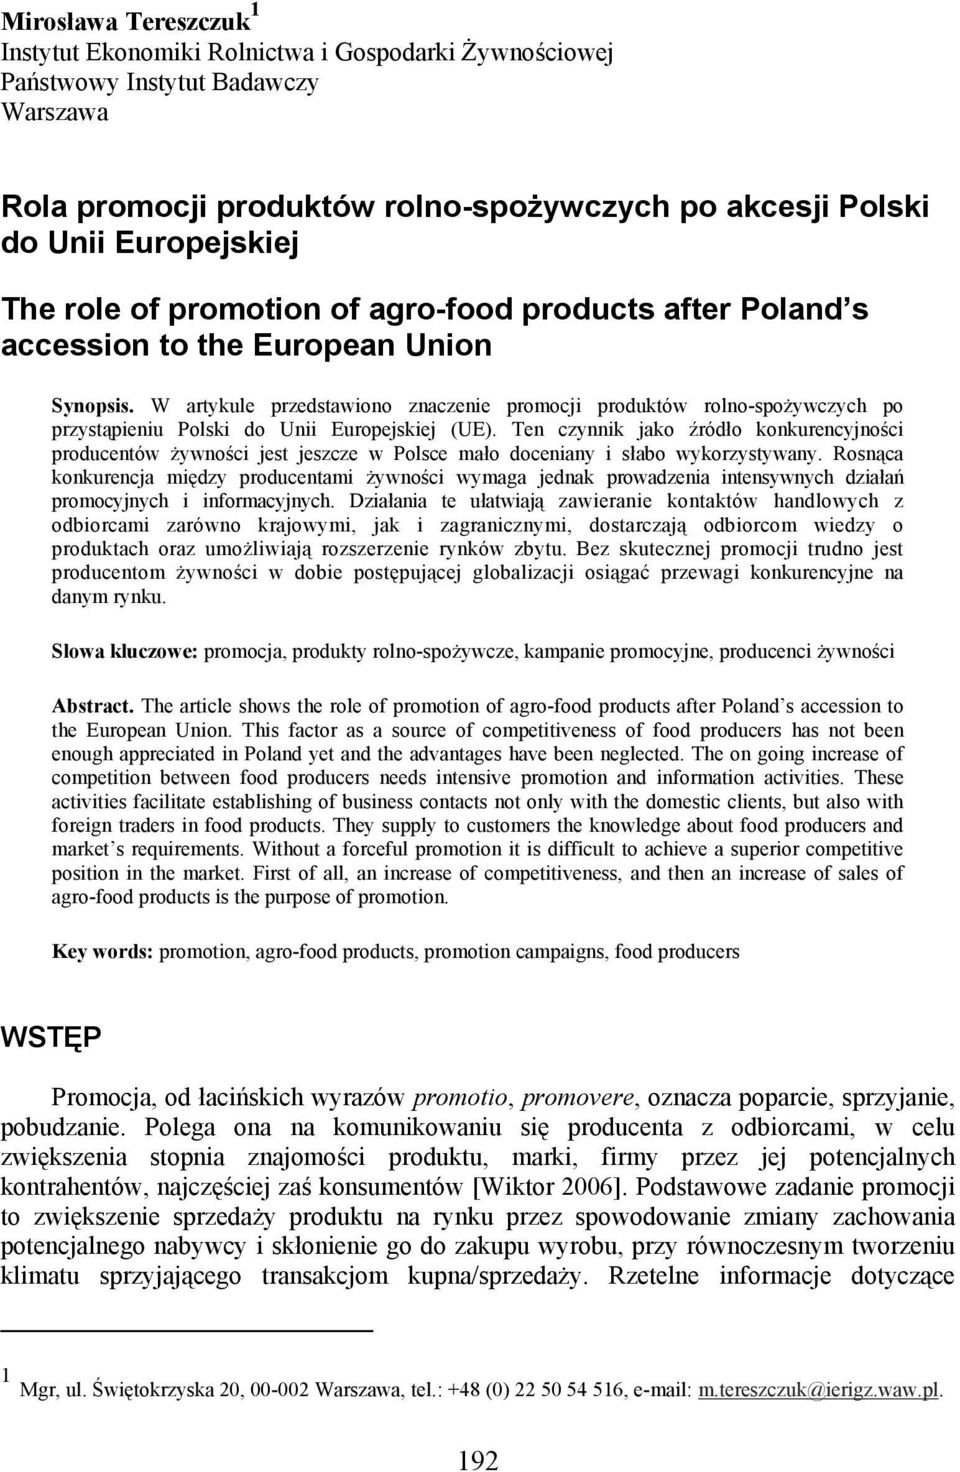 W artykule przedstawiono znaczenie promocji produktów rolno-spożywczych po przystąpieniu Polski do Unii Europejskiej (UE).